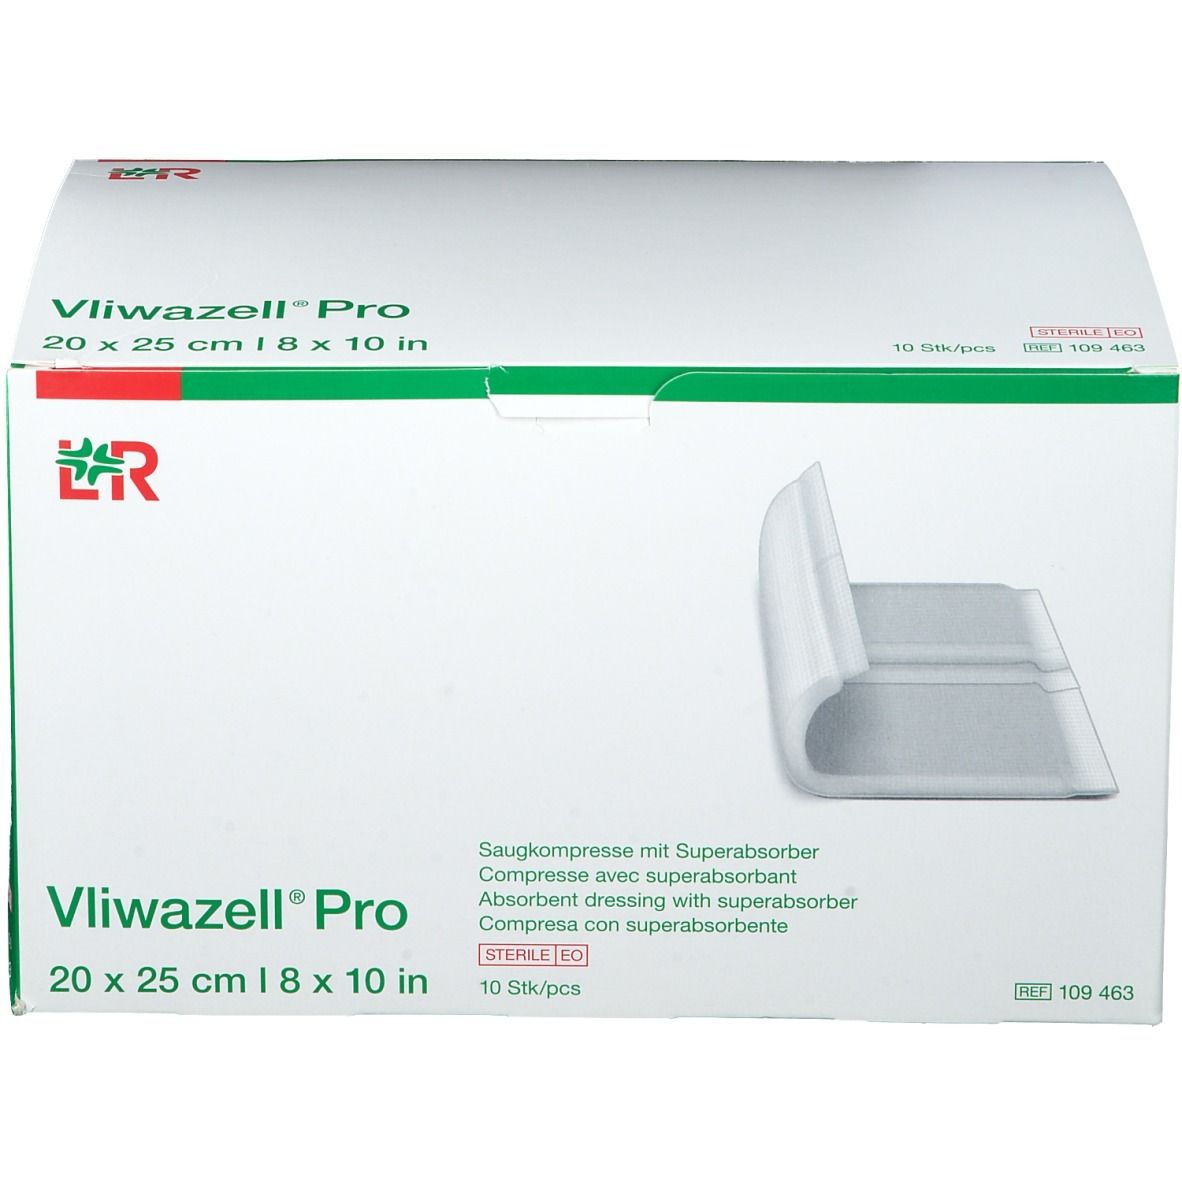 Vliwazell® Pro 20 x 25 cm